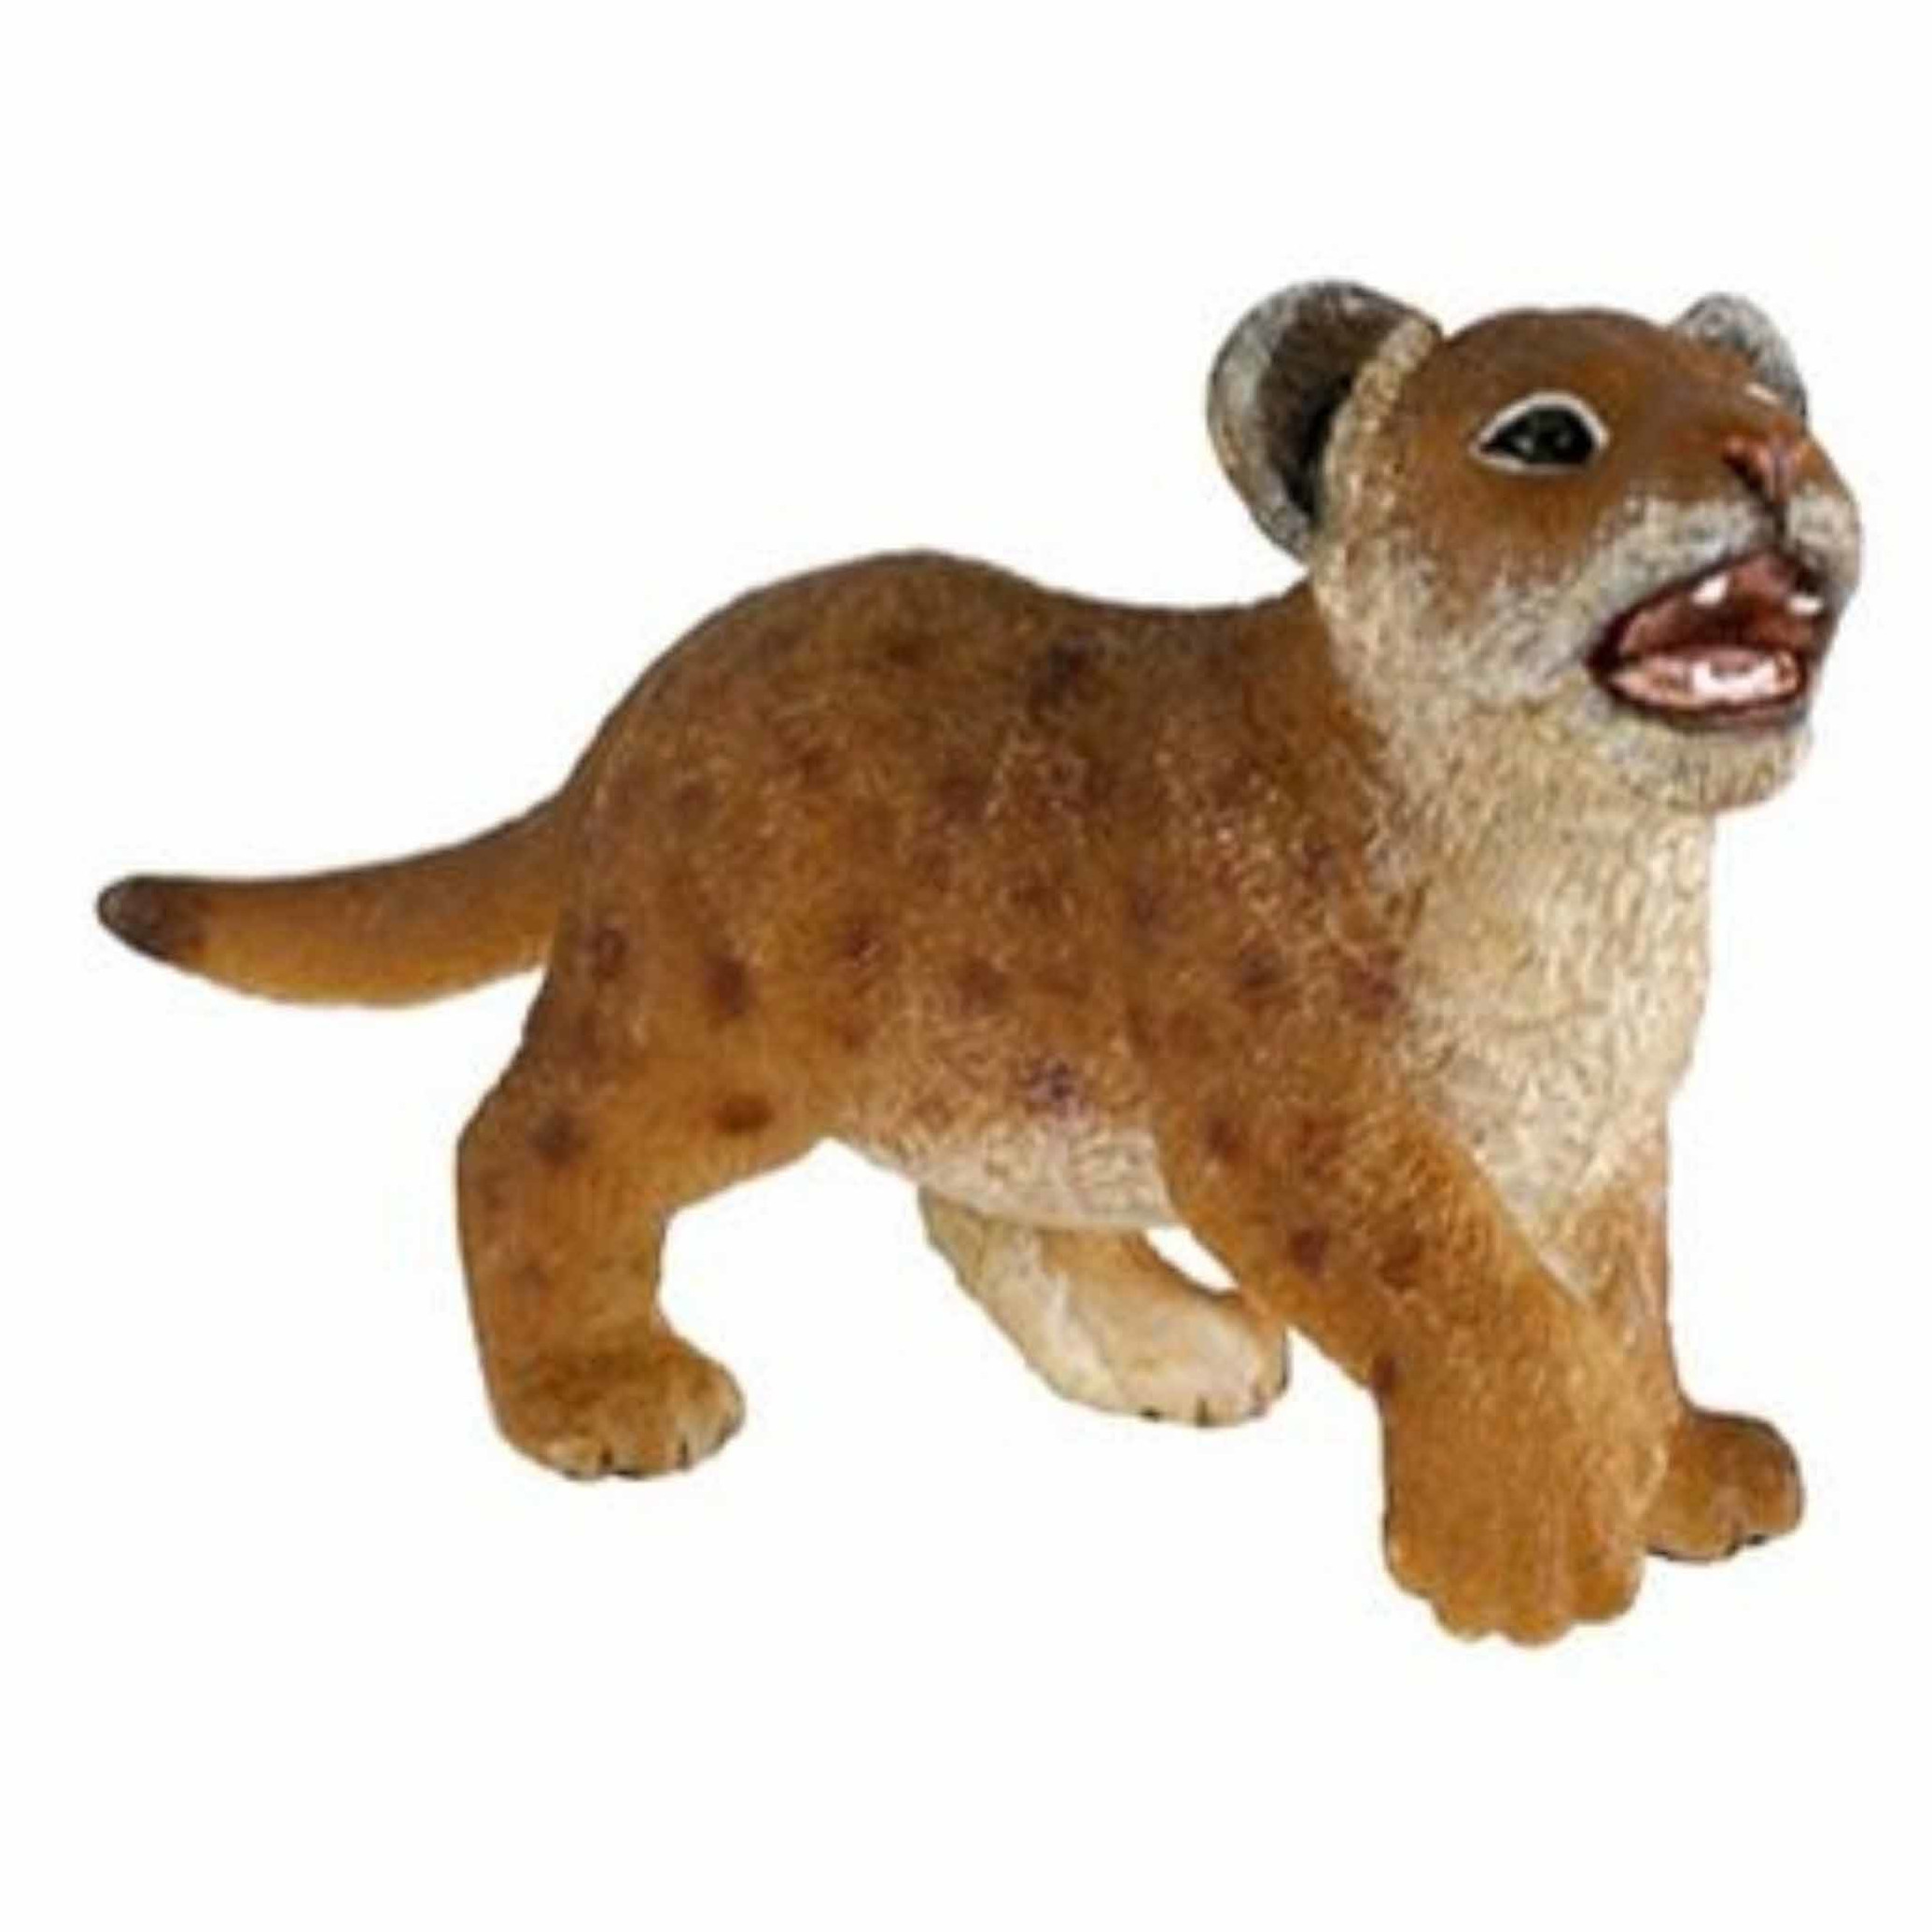 Plastic speelgoed figuur leeuwen welpje 7 cm